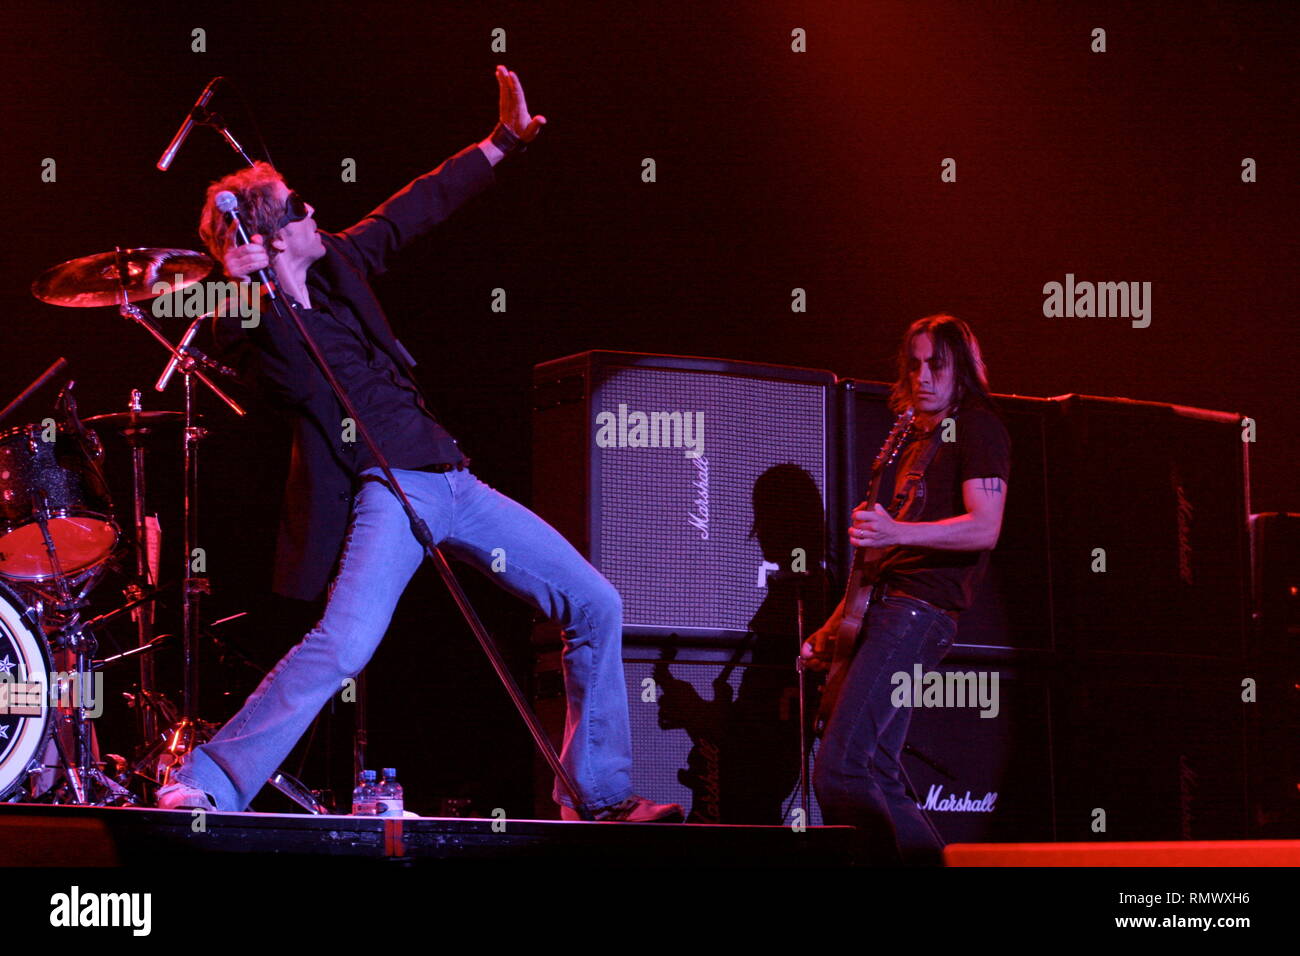 Gary Cherone chanteur extrême est illustré sur scène pendant un concert 'live'. Banque D'Images